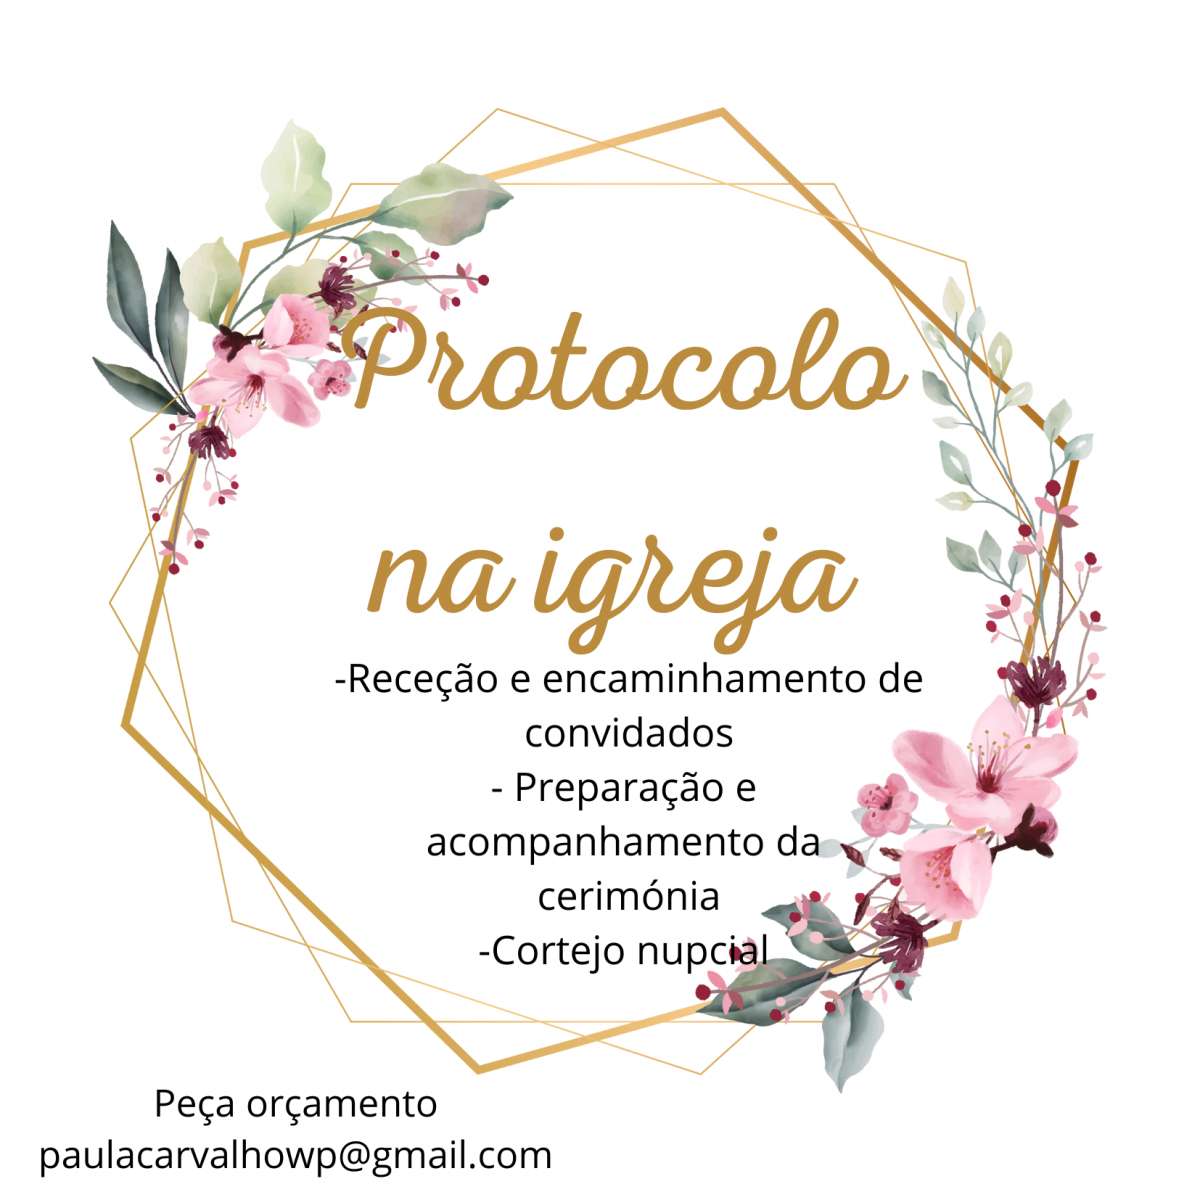 Paula Carvalho organização de eventos - Póvoa de Varzim - Serviço de Mestre de Cerimónias para Casamentos